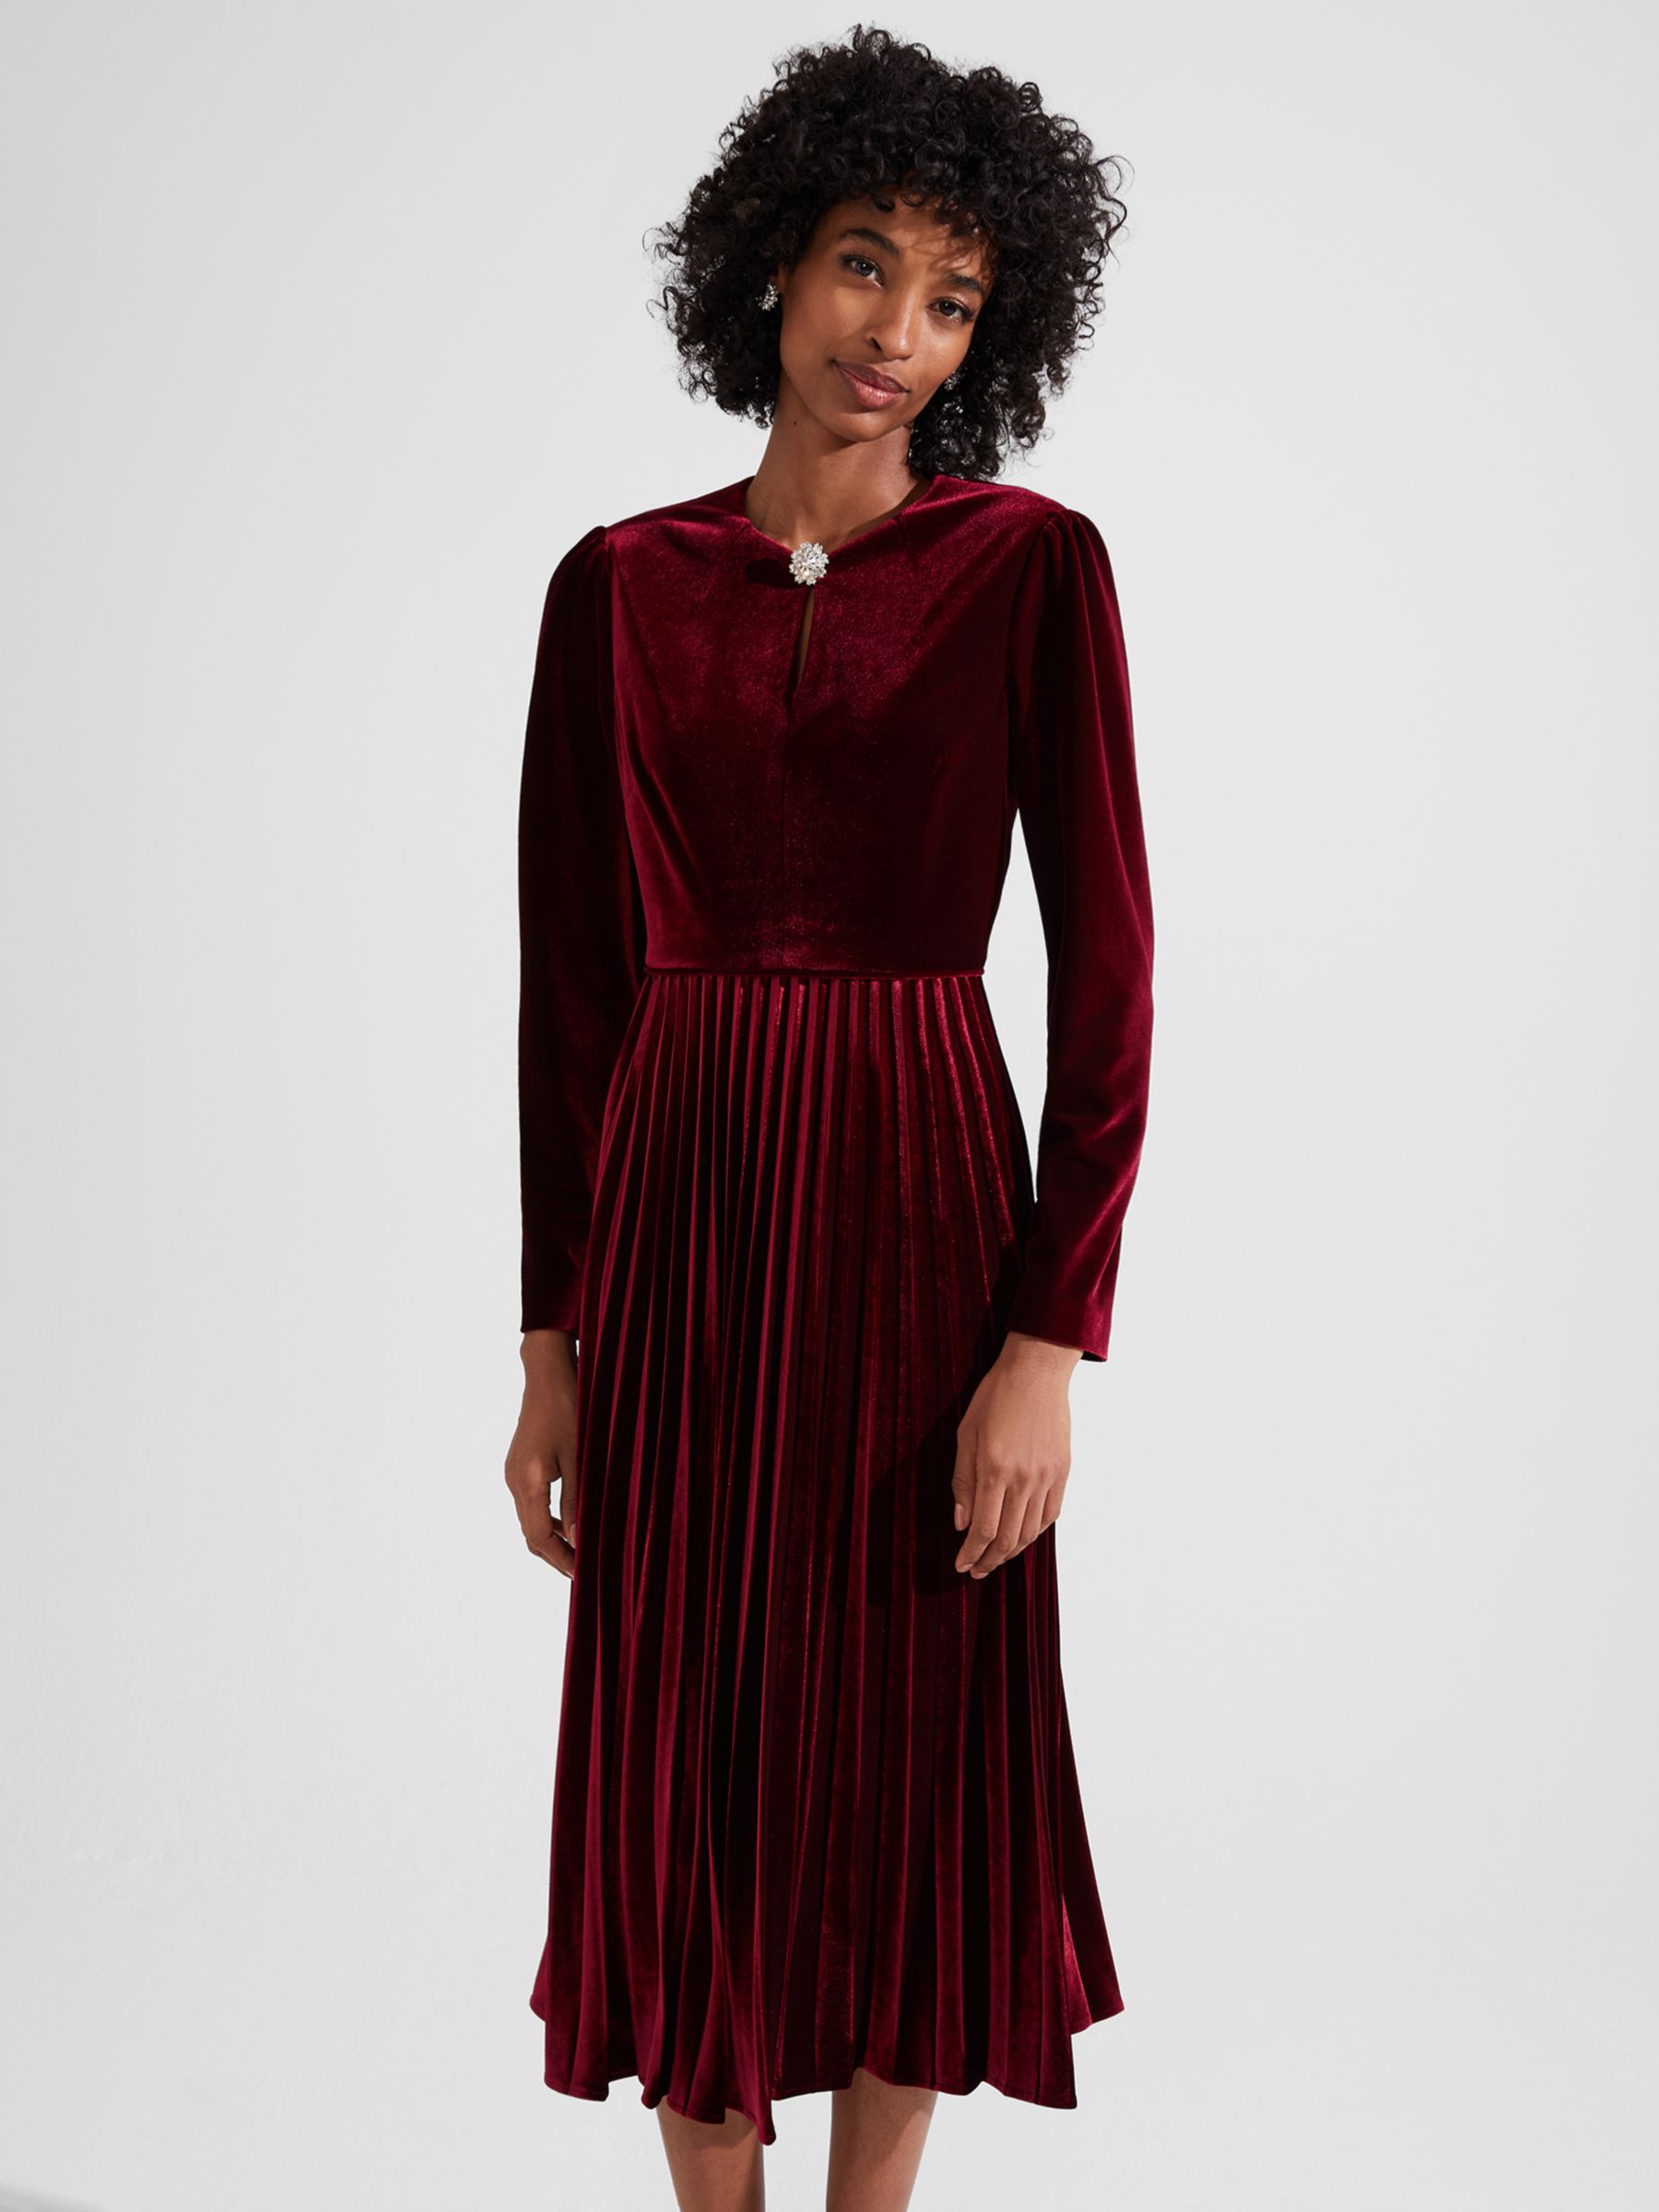 Hobbs Rosalie Velvet Pleated Dress, Deep Red, 12